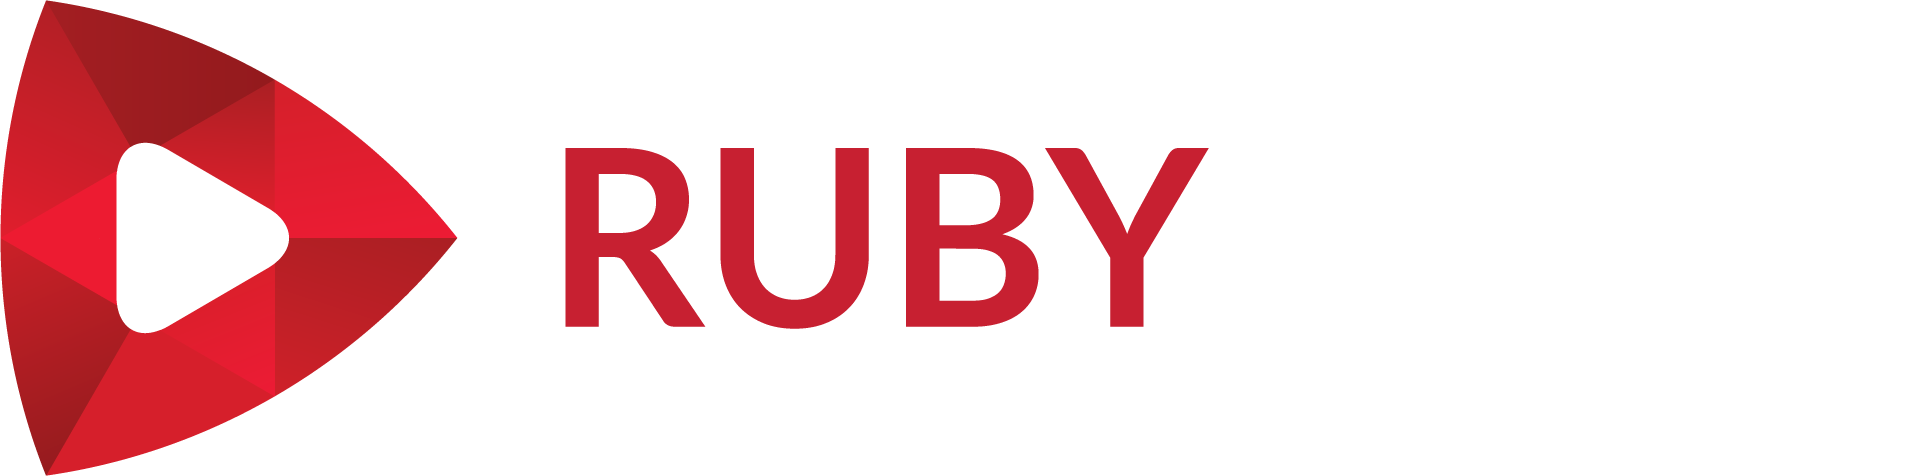 Ruby Play. Джет Руби лого. Logo Ruby Fortune. Логотип ИГРОЗОНА. Руби плей